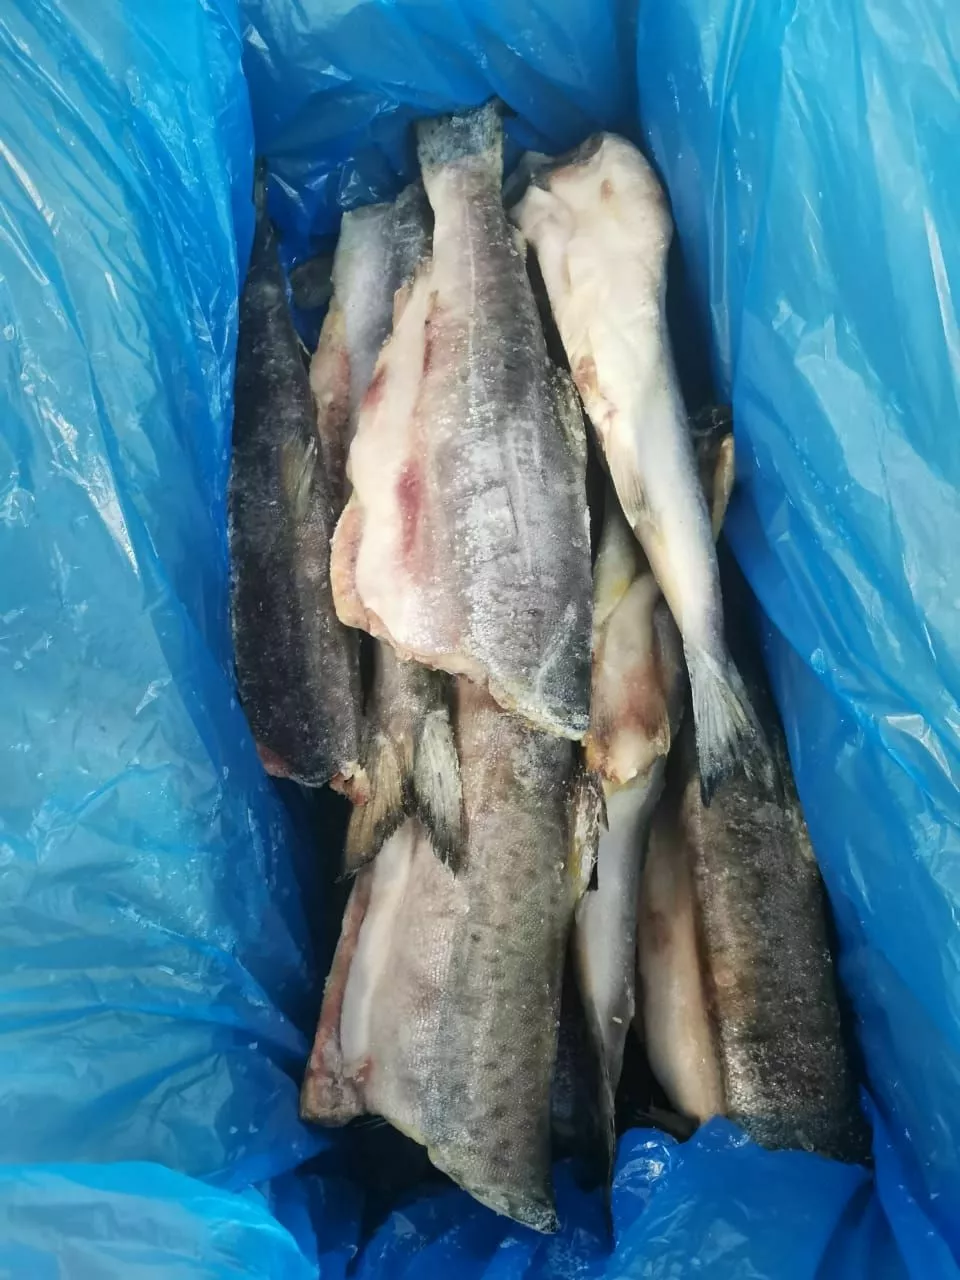 горбуша пбг, производ, рыбные продукты  в Наро-Фоминске